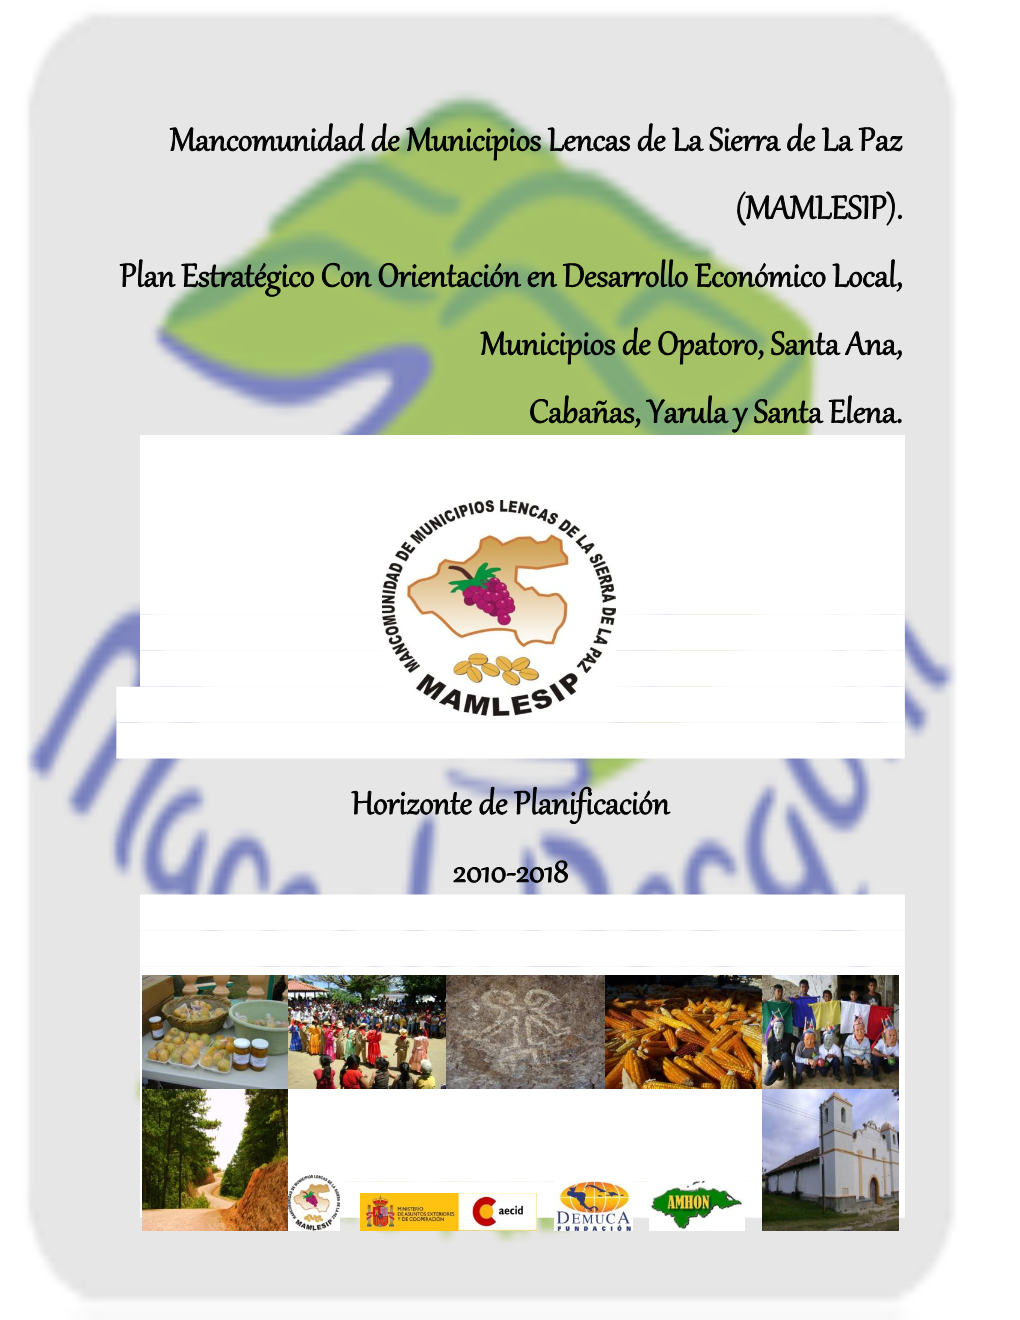 Mancomunidad De Municipios Lencas De La Sierra De La Paz (MAMLESIP). Plan Estratégico Con Orientación En Desarrollo Económico